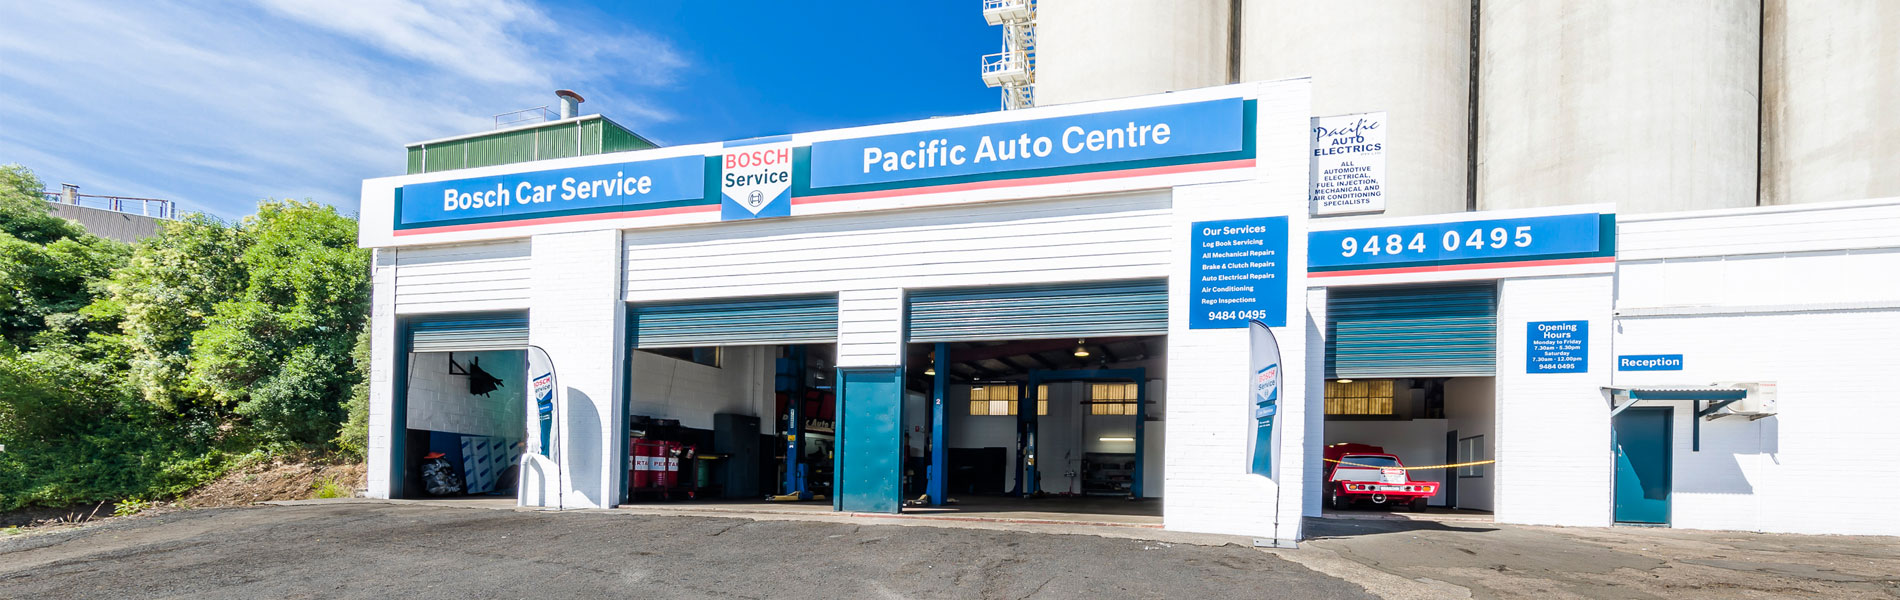 Pacific Auto center